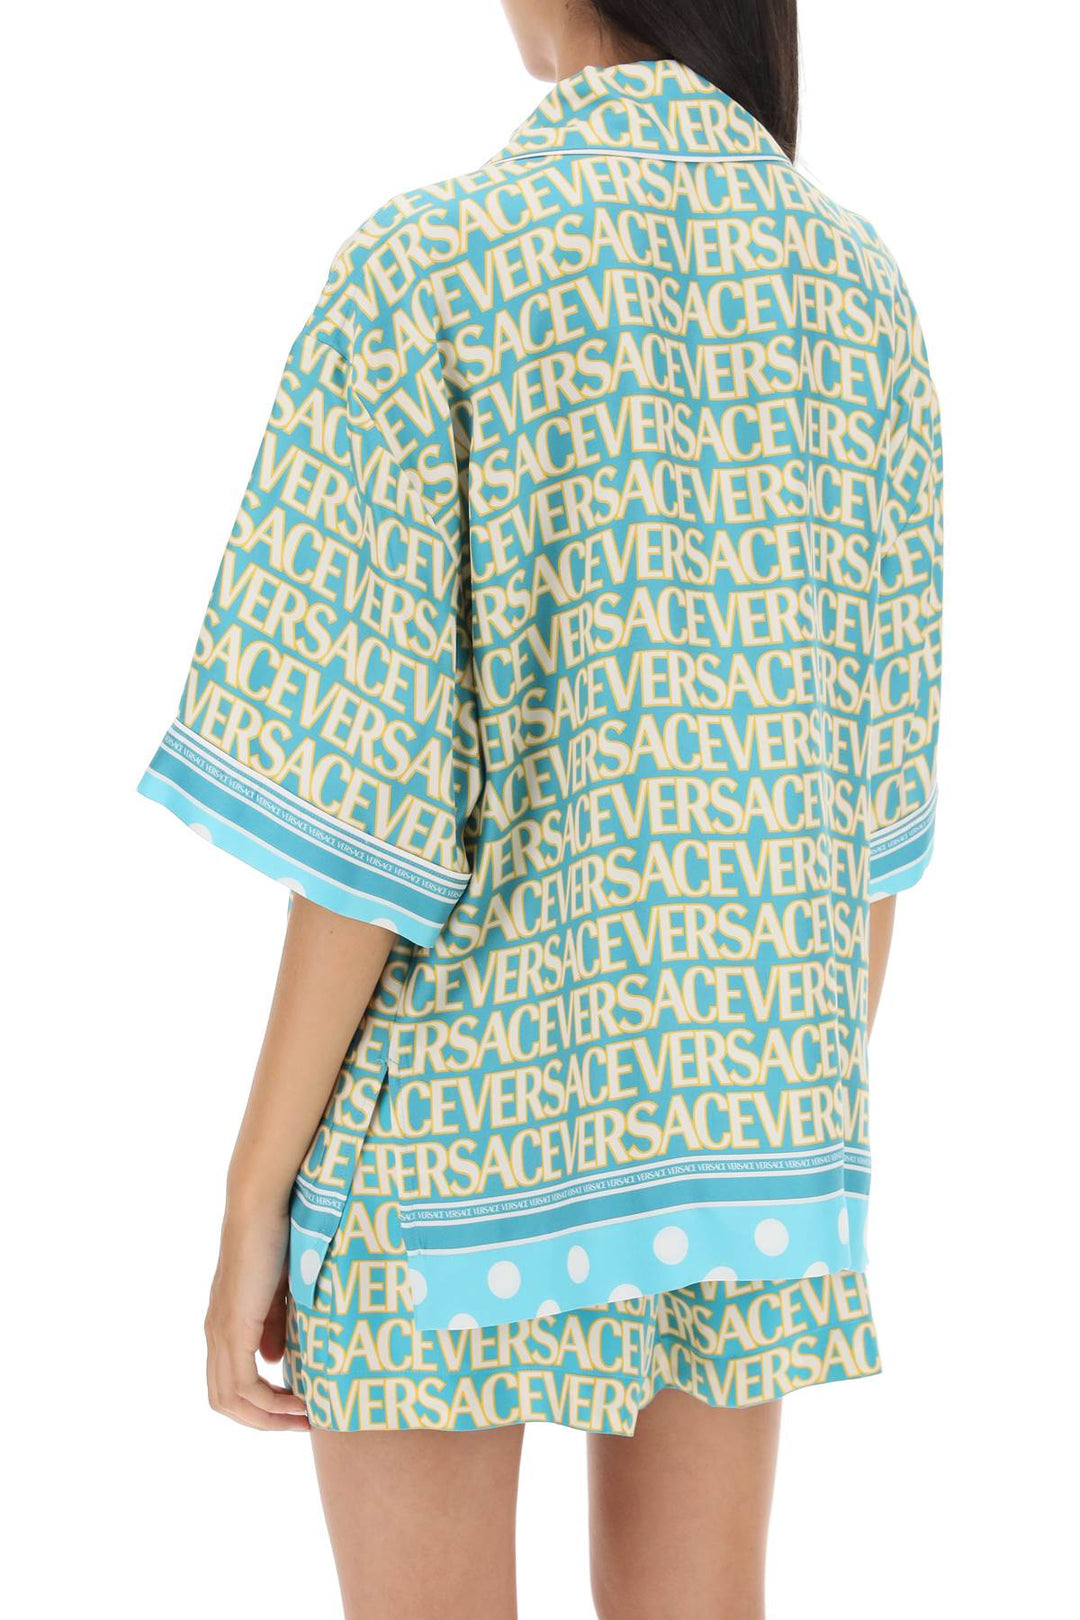 Versace 'Allover Polka Dot' Short Sleeved Shirt   Celeste